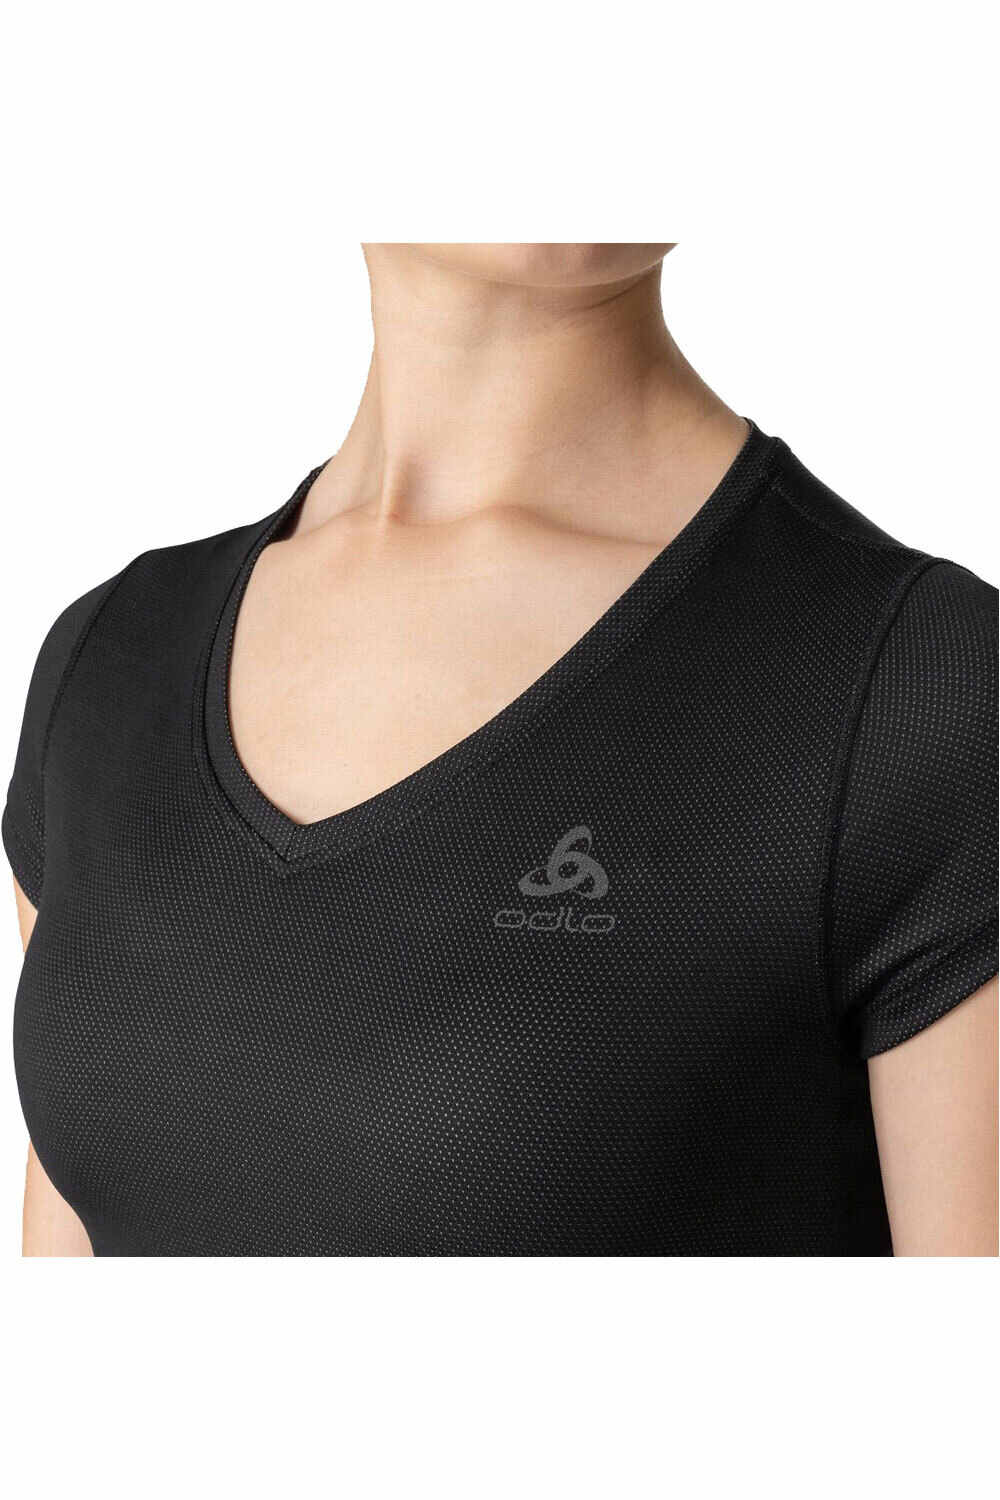 Odlo camisetas termicas mujer BL TOP v-neck s/s ACTIVE EVERYDAY ECO 2P vista detalle